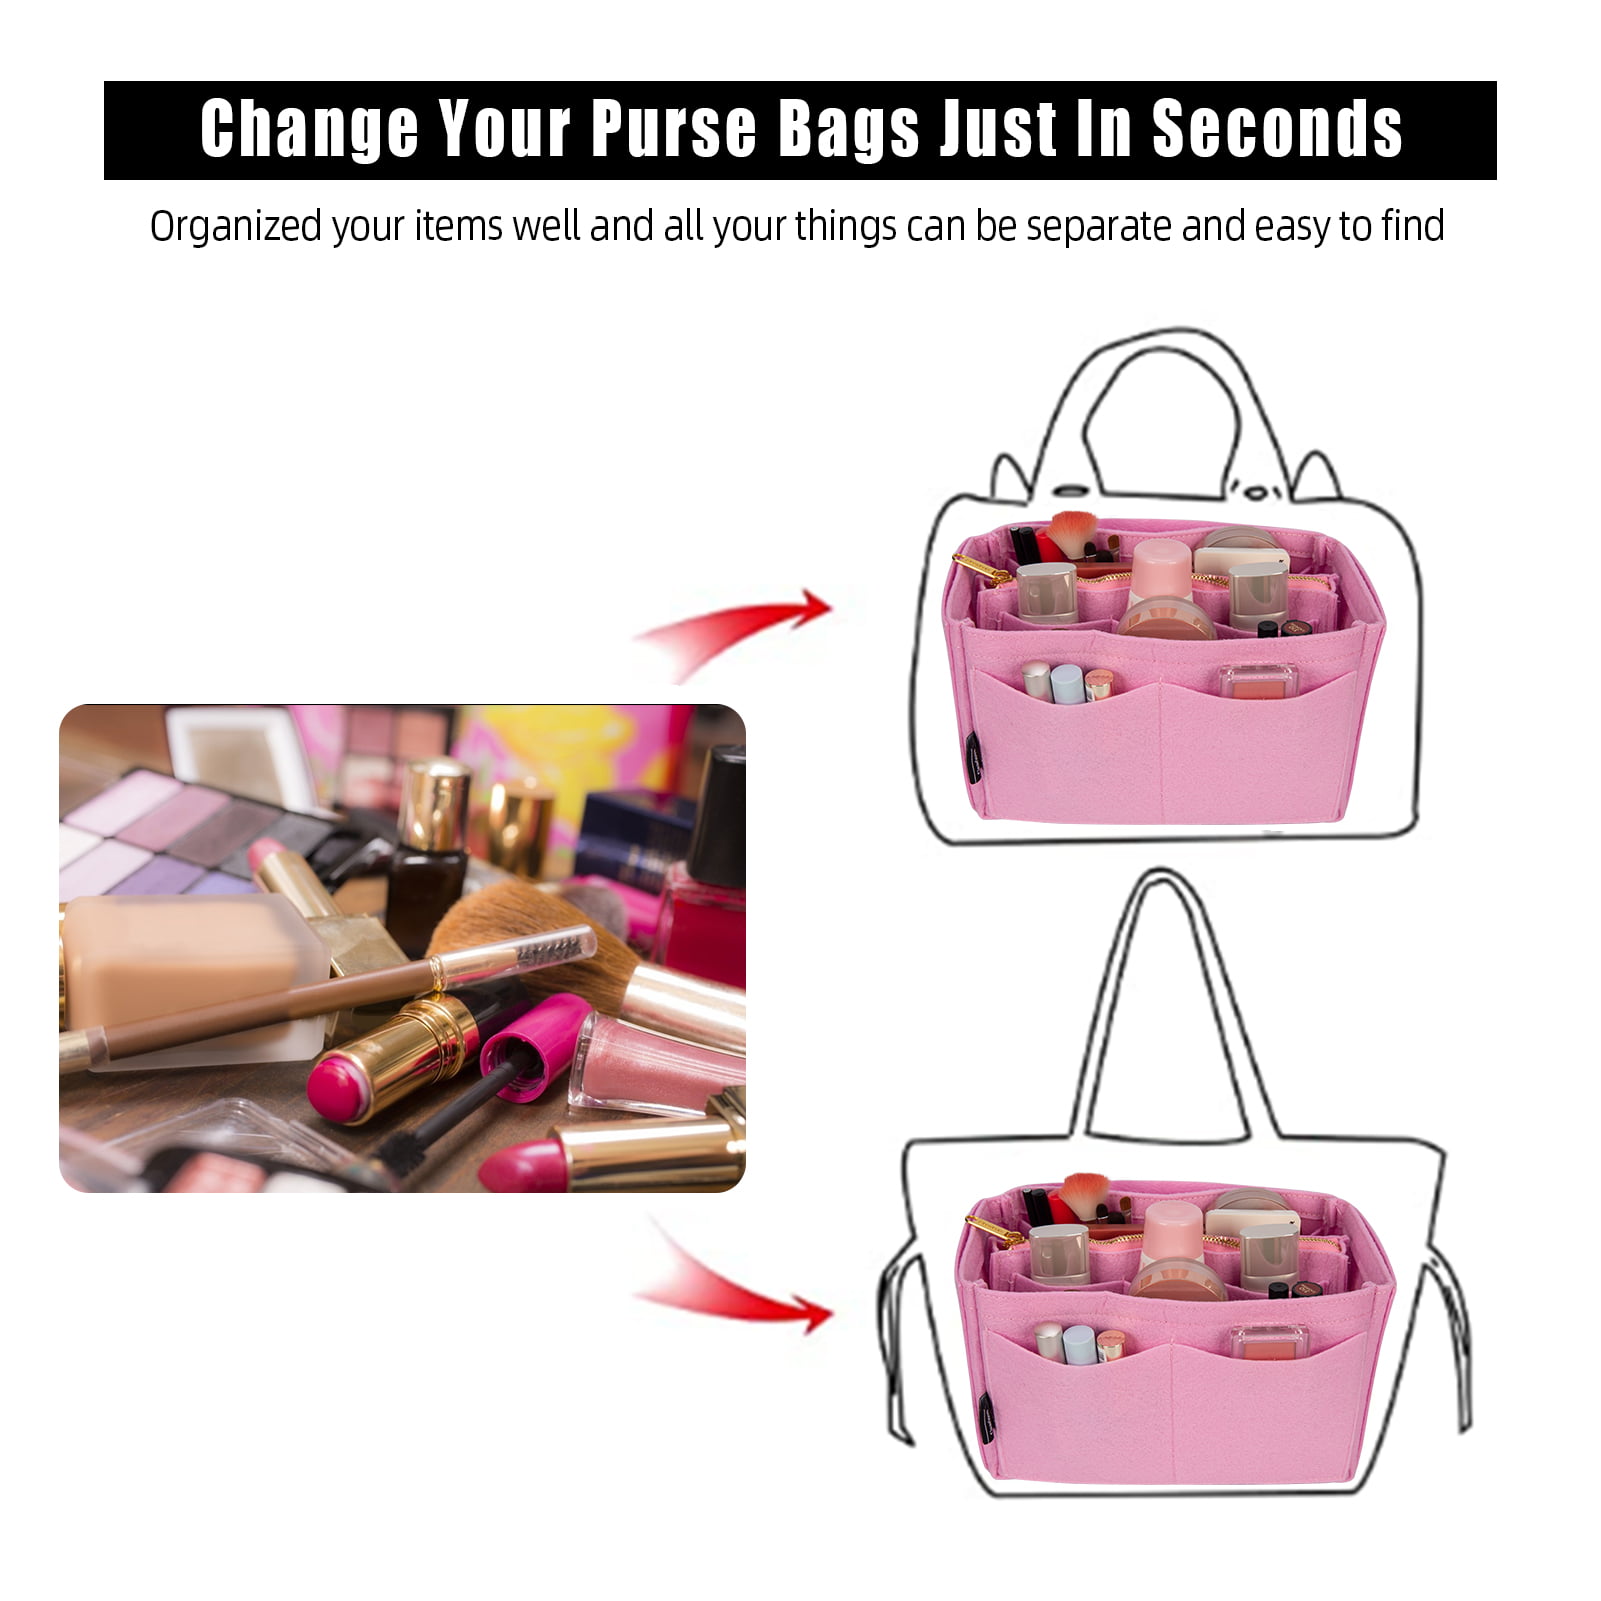 Deago Felt Insert Purse Handbag Organizer Bag Insert In Bag Totes Shaper  with Inner Pocket Fits Neverfull Speedy 